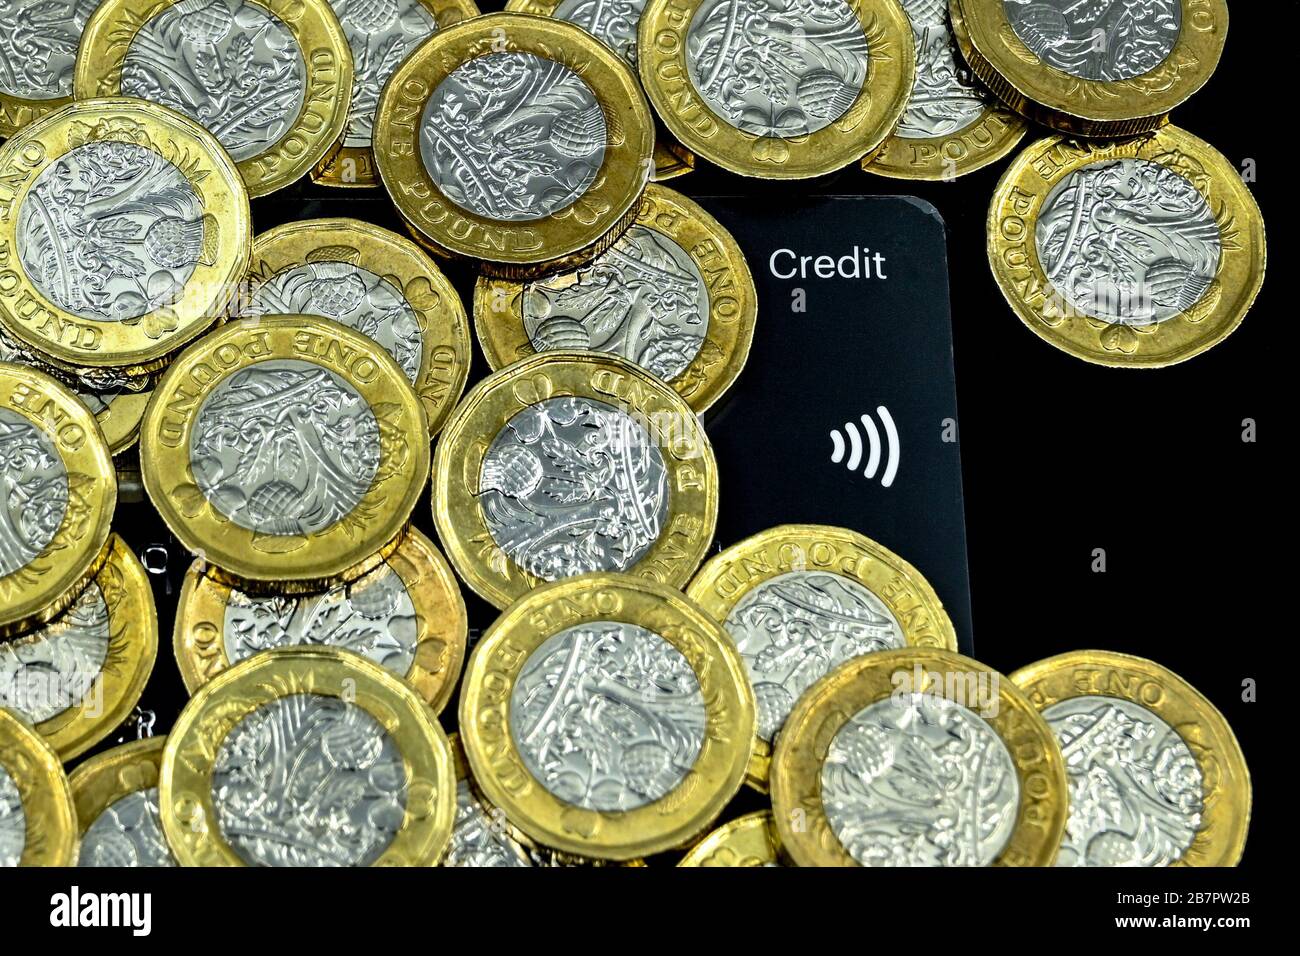 CARDIFF, WALES - JANUAR 2020: Nahaufnahme der britischen Währung GBP - eine Pfund auf einer Kreditkarte mit einem kontaktlosen Zahlungssymbol Stockfoto